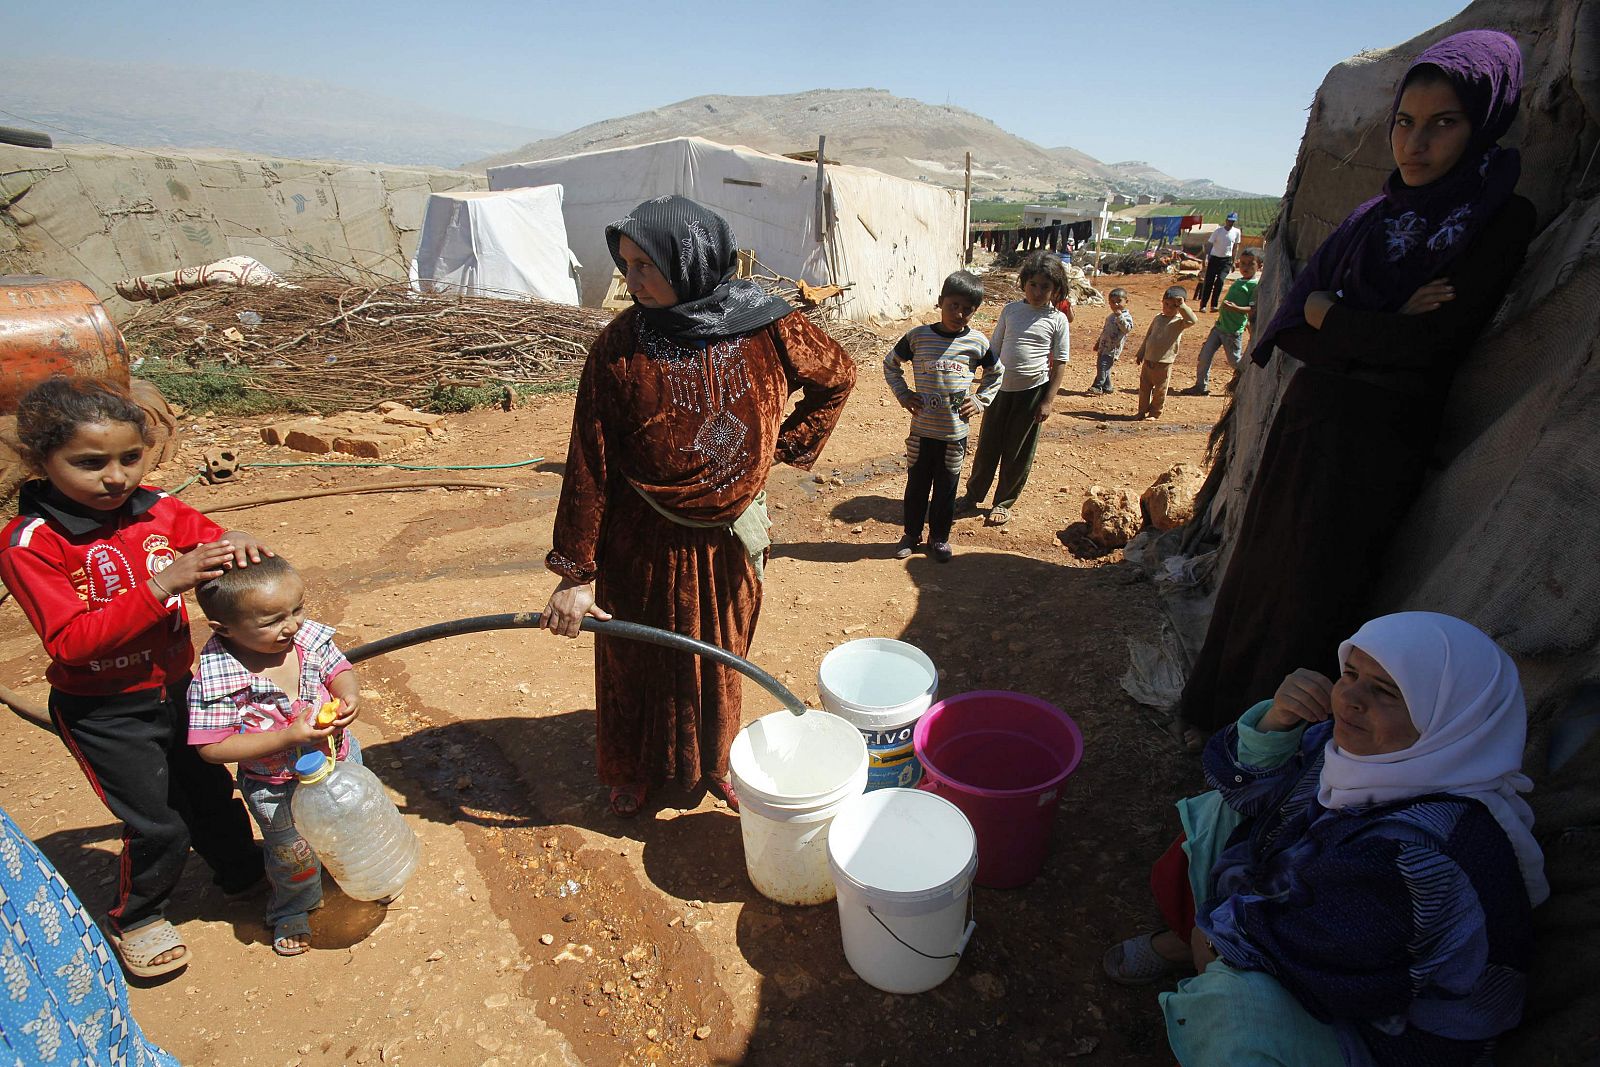 Refugiados sirios llenan baldes con agua en un campamento improvisado para los refugiados en Kfar Zabad en el valle de Bekaa, a pocos kilómetros de la frontera con Siria.